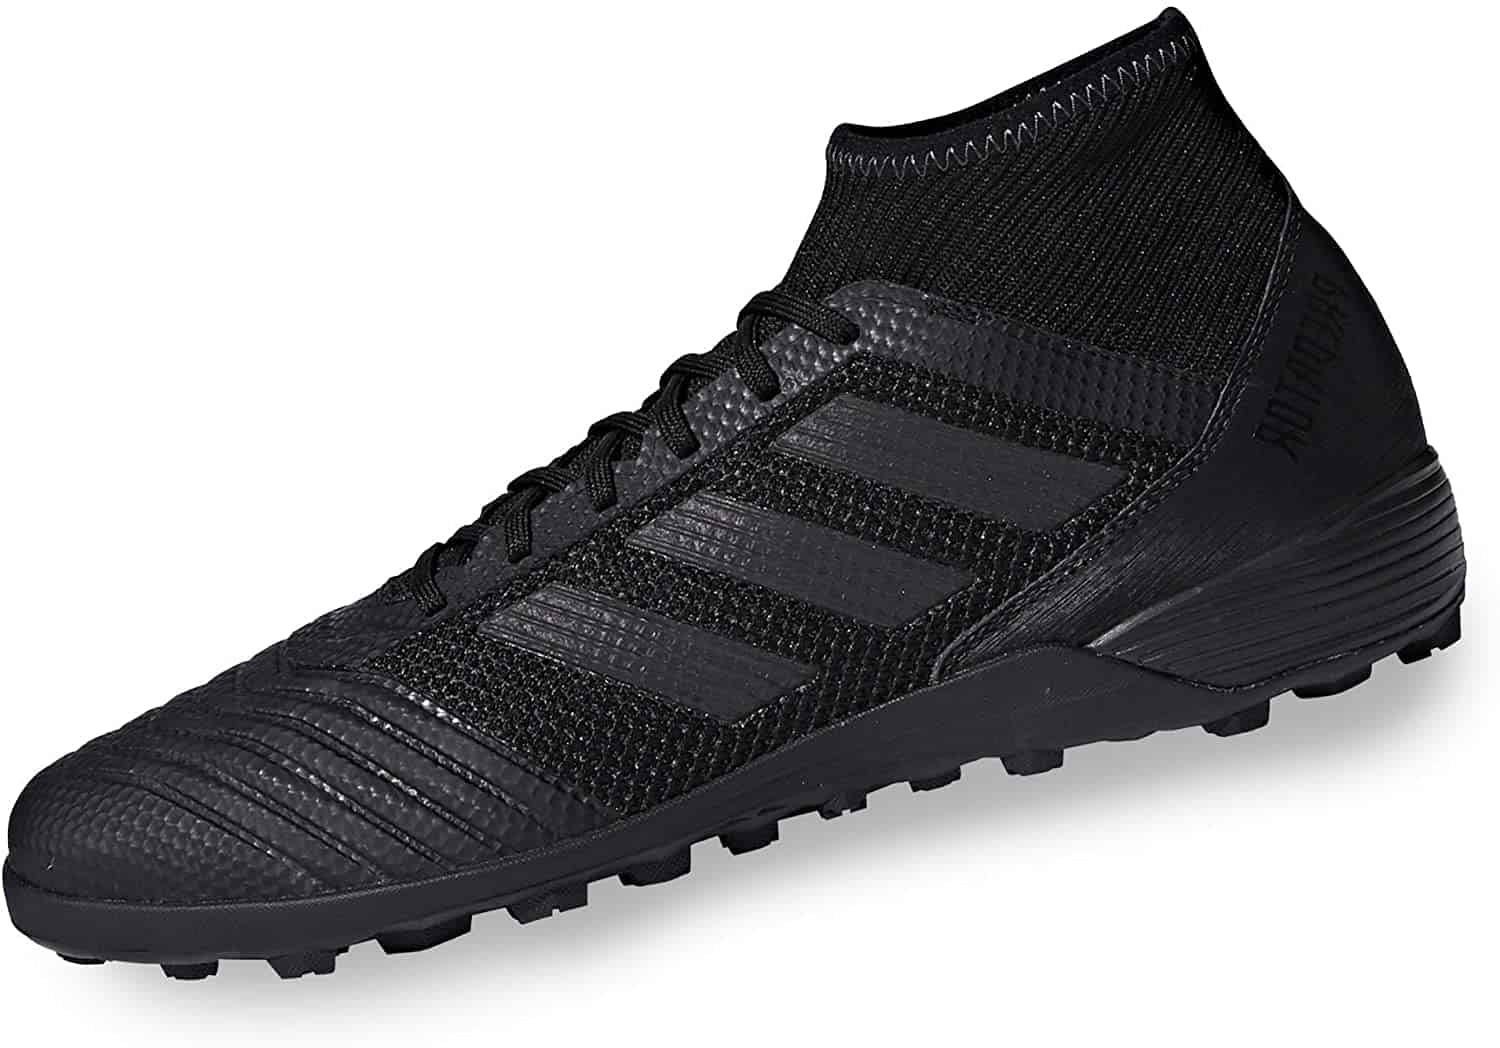 Beste voor zaalvoetbal: Adidas Predator Tango 18.3